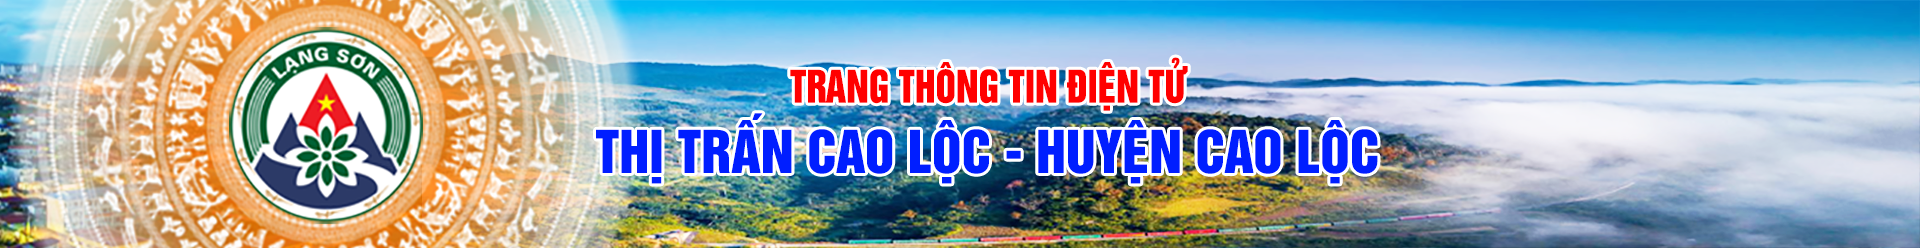 Thị trấn Cao Lộc